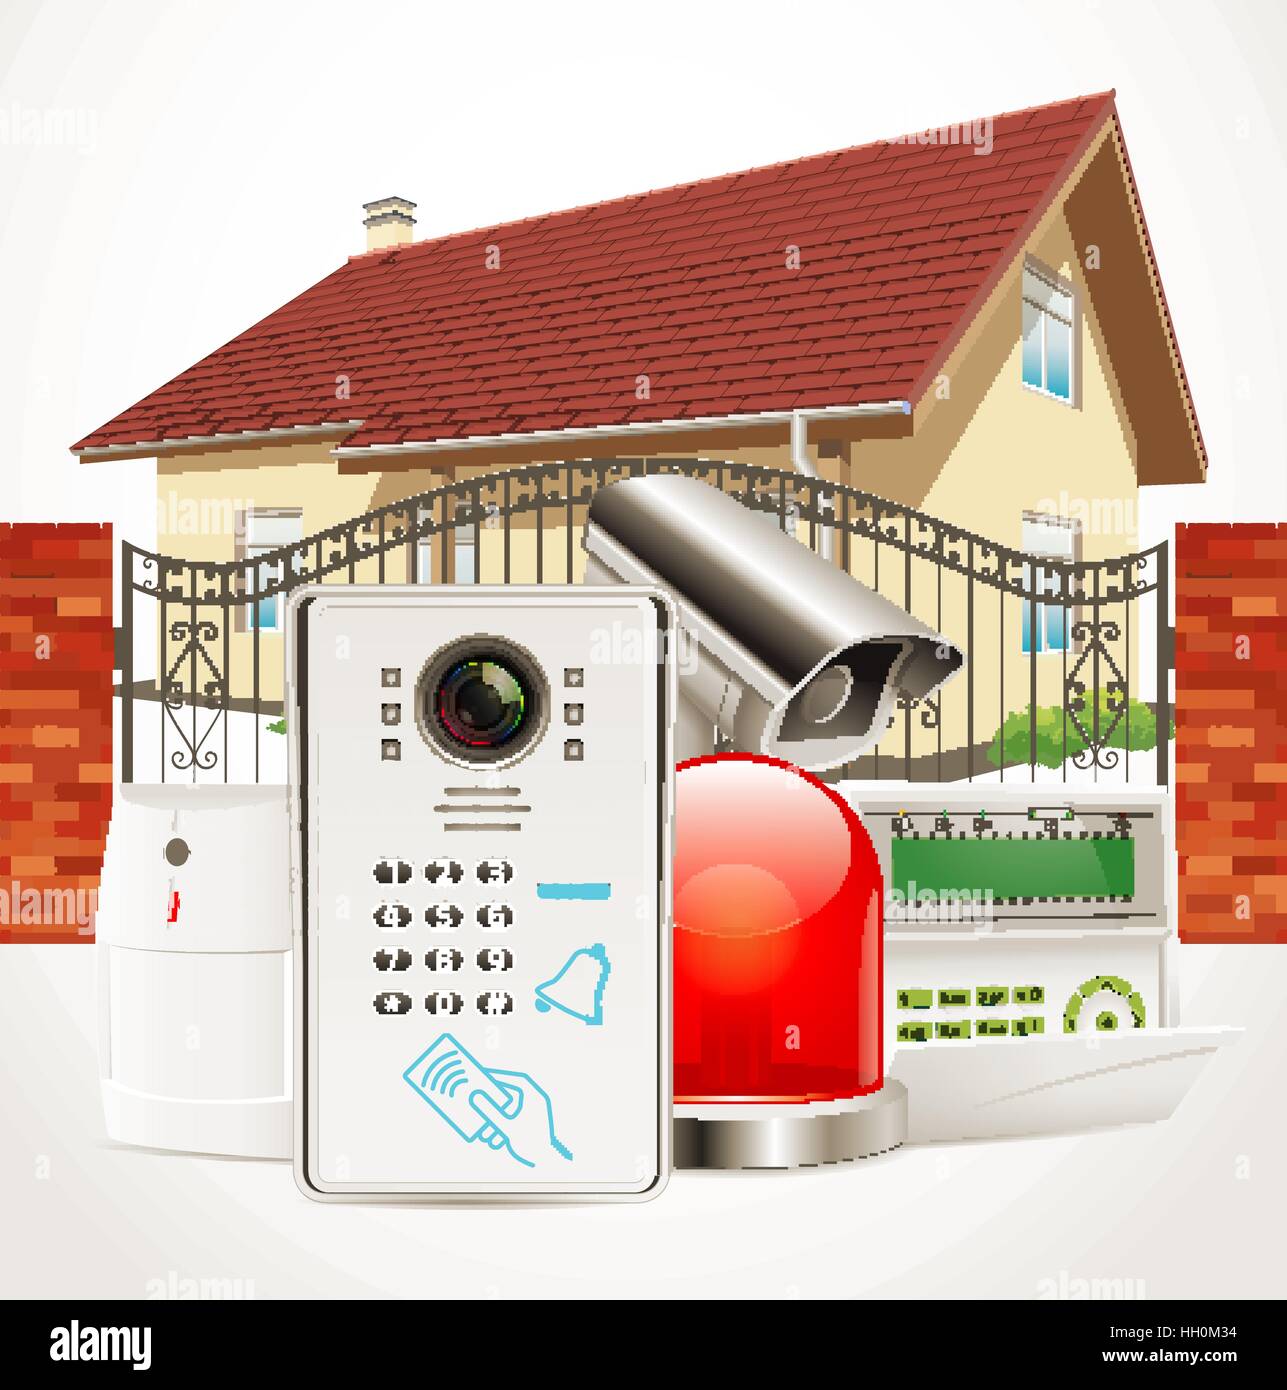 Système de sécurité accueil concept - détecteur de mouvement, capteur de gaz, caméra de surveillance, alarme electronique Illustration de Vecteur